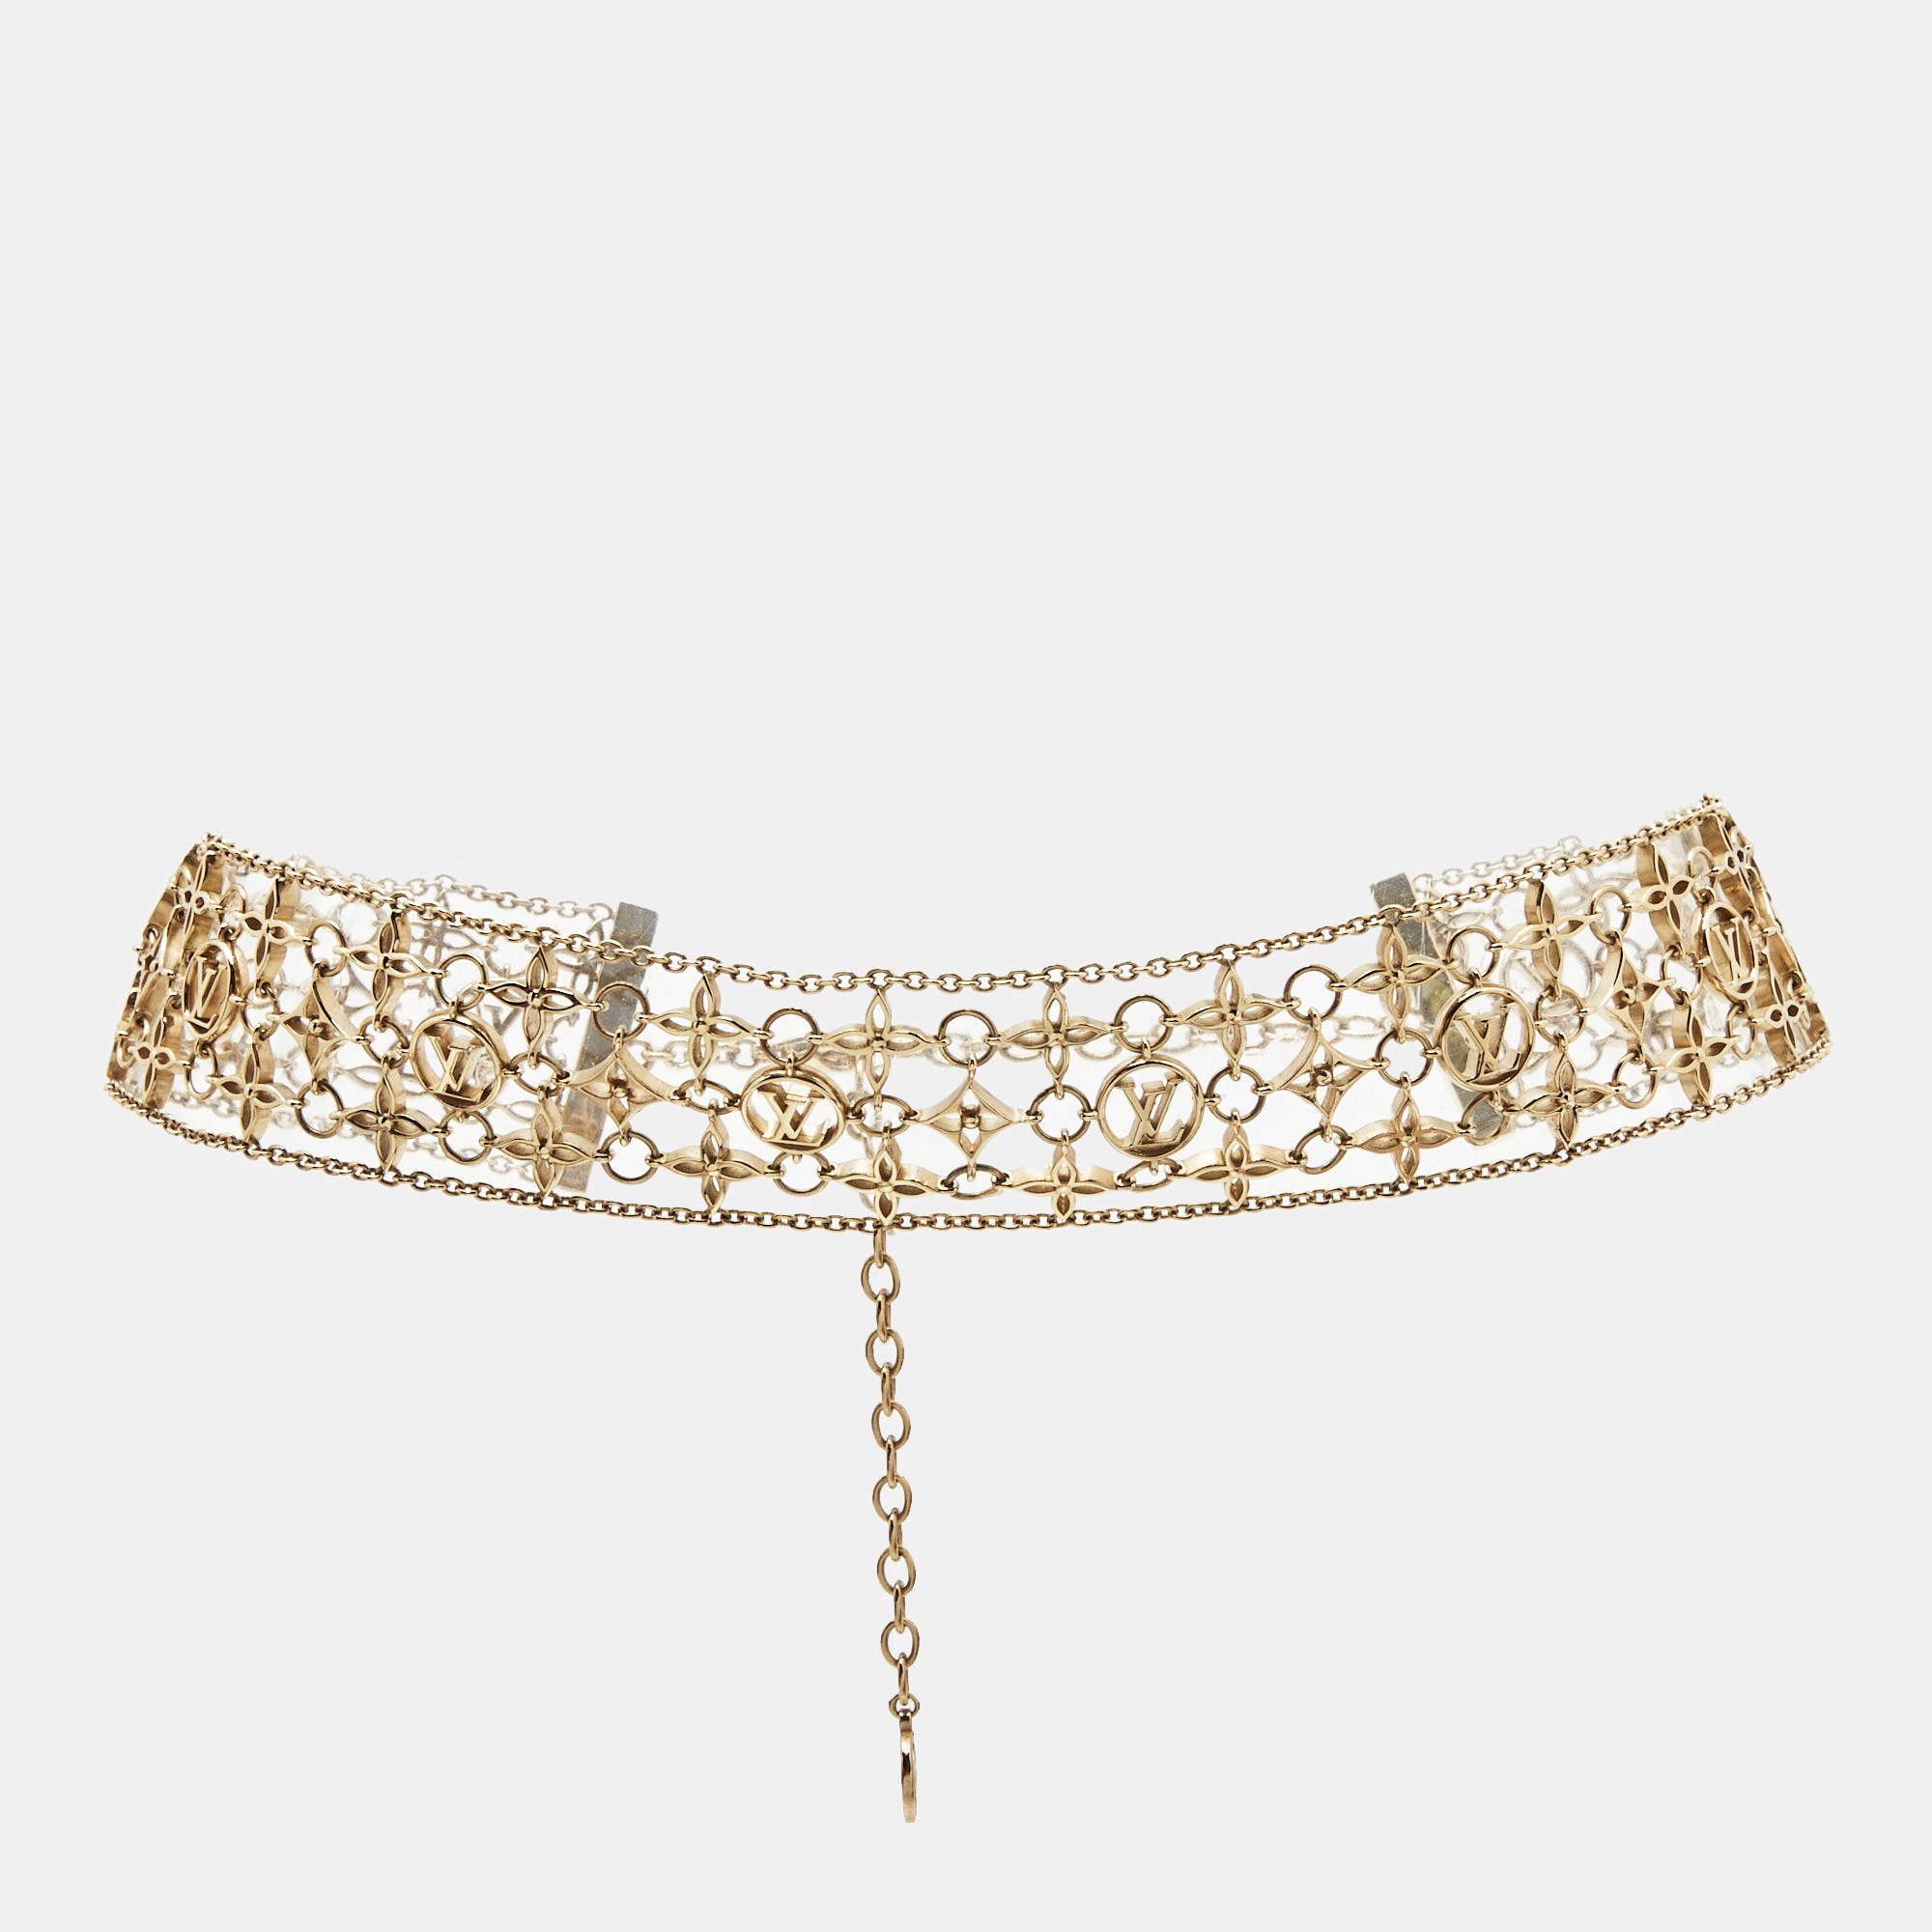 Louis Vuitton Filigram Gold Tone Necklace